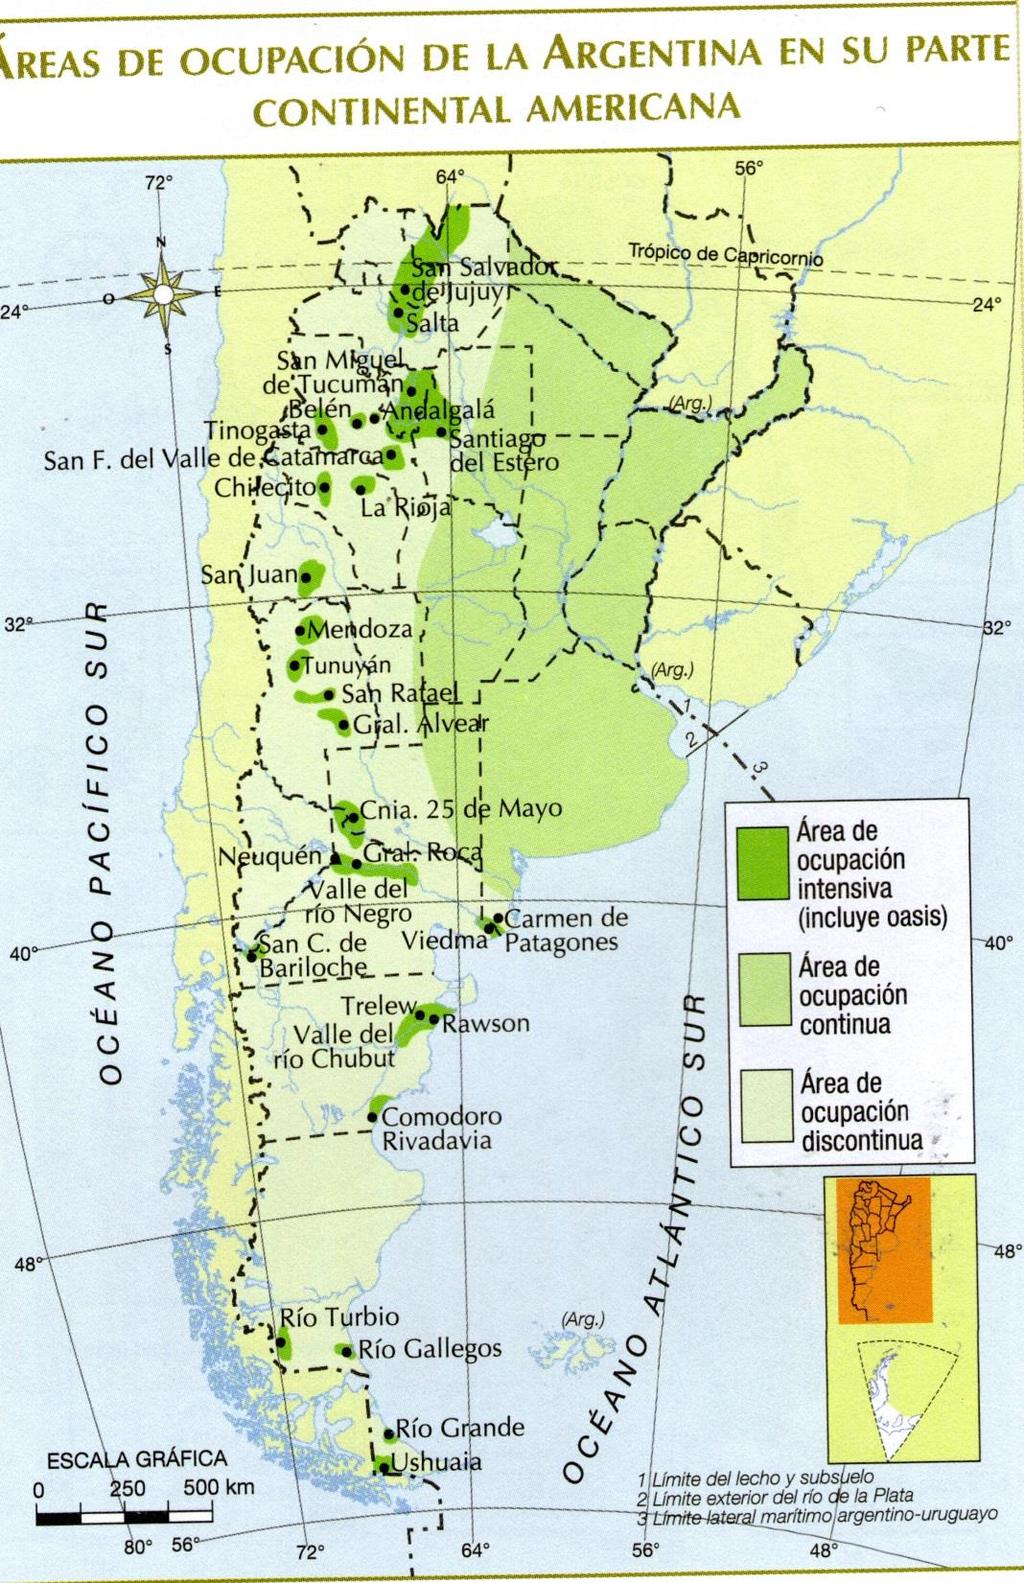 2. ÁREA DE OCUPACIÓN DISCONTINUA Se localiza en el oeste y sur de la Republica Argentina.